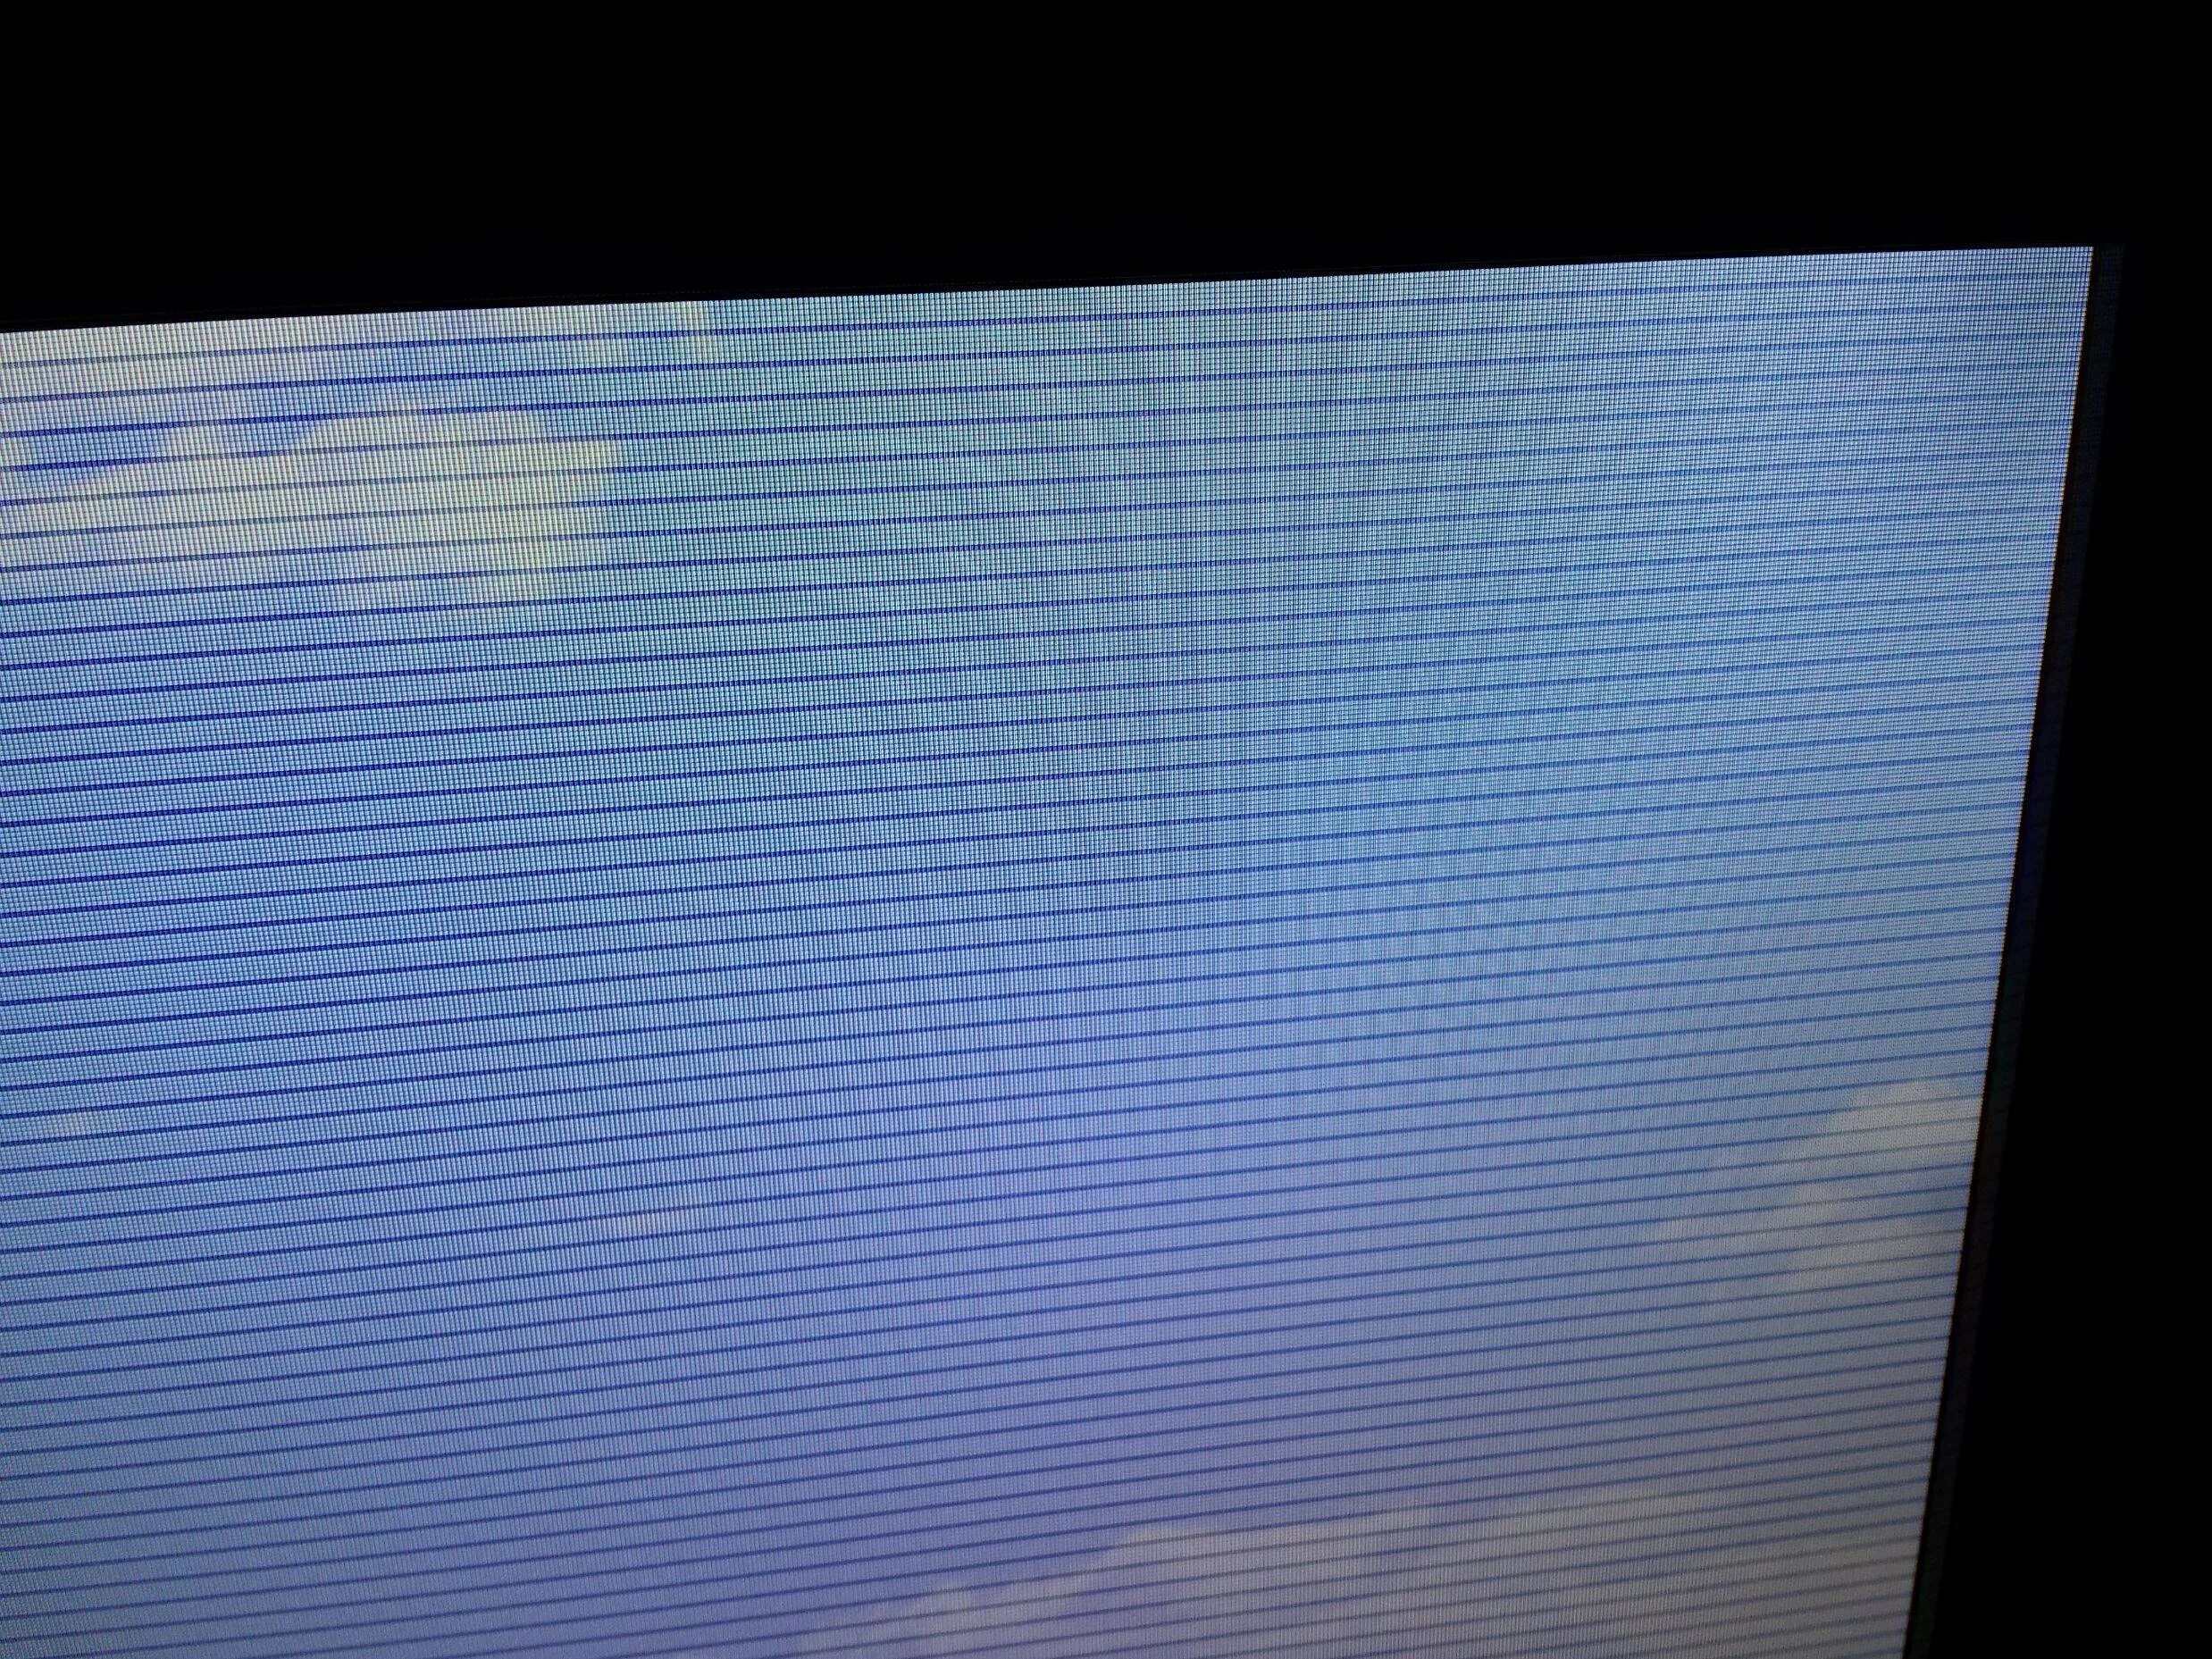 Полосы по горизонтали. Телевизор Филипс горизонтальные полосы на экране. Телевизор самсунг рябит экран. Lta400hm15 горизонтальные полосы. Вертикальные полосы на экране телевизора LG 32ln541u.